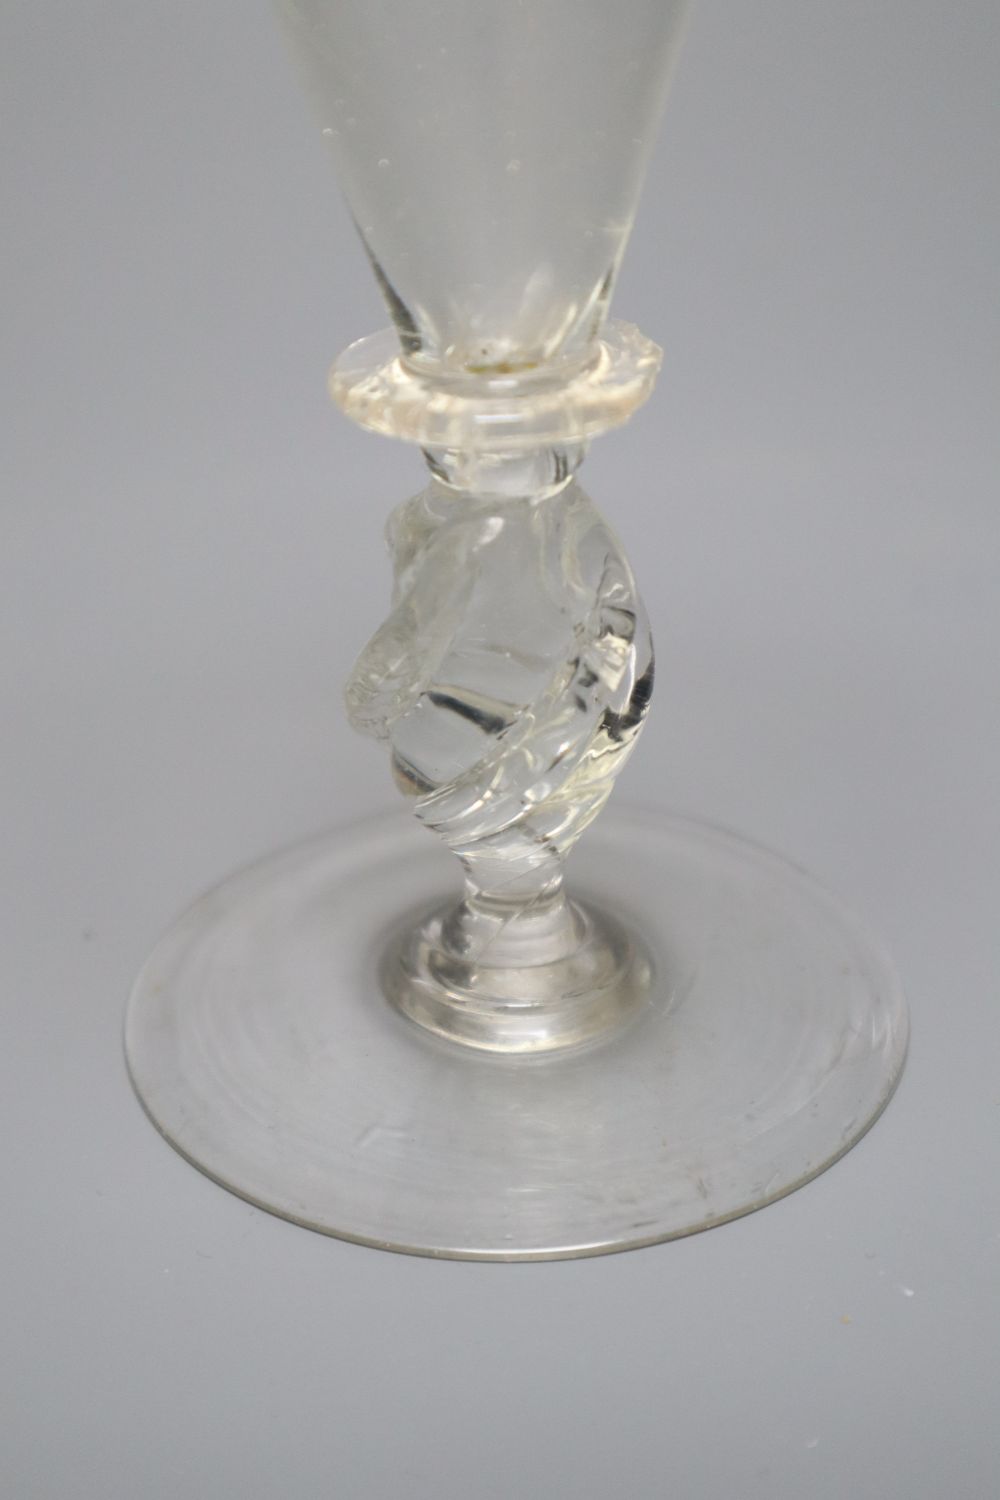 A façon de Venise historismus wine glass, 20th century, the conical bowl above a 'propeller' stem, - Image 3 of 3